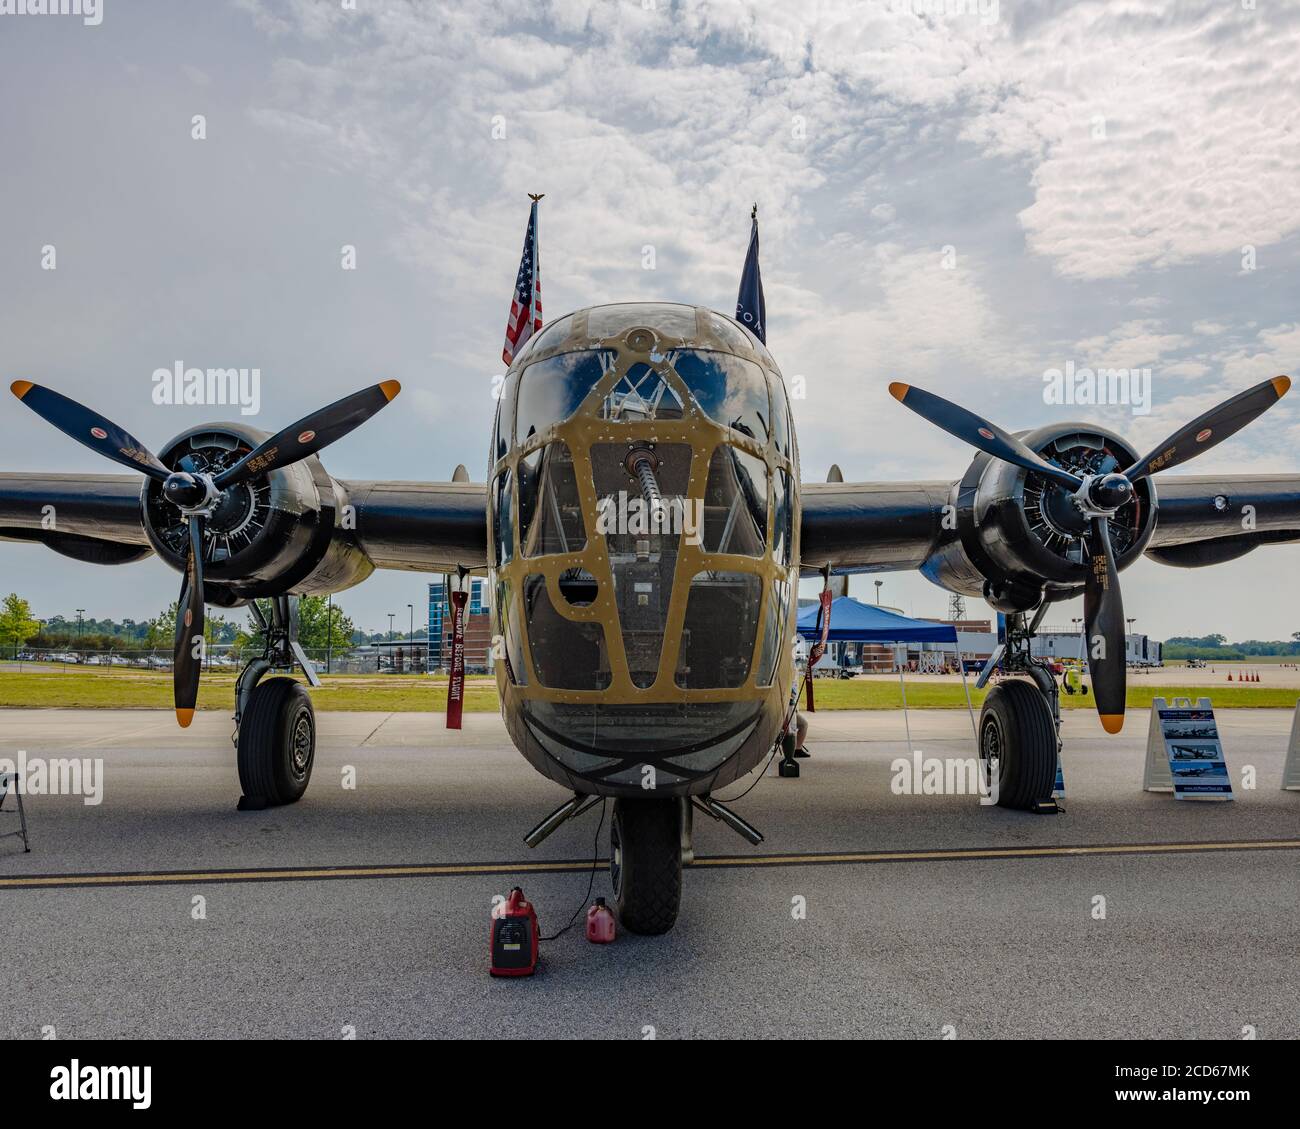 WWII or WW2 B-24 Liberator bomber on display in Montgomery Alabama, USA. Stock Photo